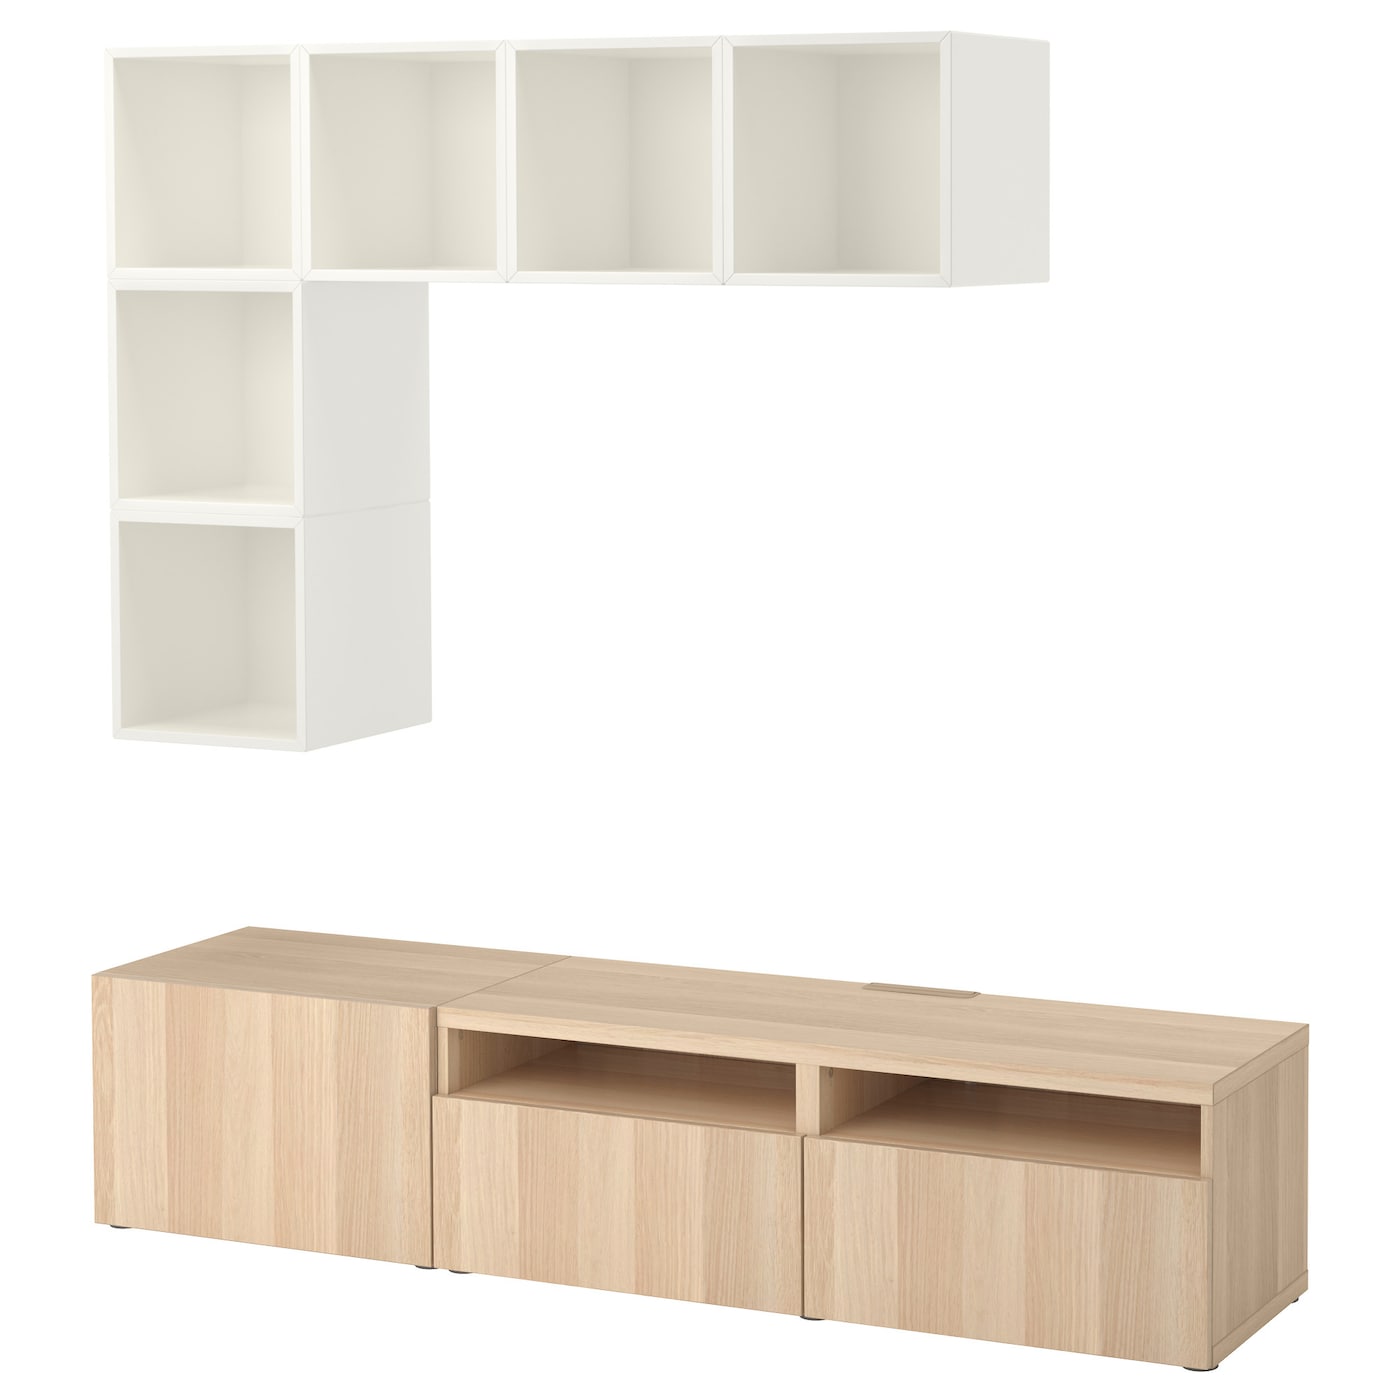 Комплект мебели д/гостиной  - IKEA BESTÅ/BESTA EKET, 180x42x170см, белый/светло-коричневый, БЕСТО ЭКЕТ ИКЕА